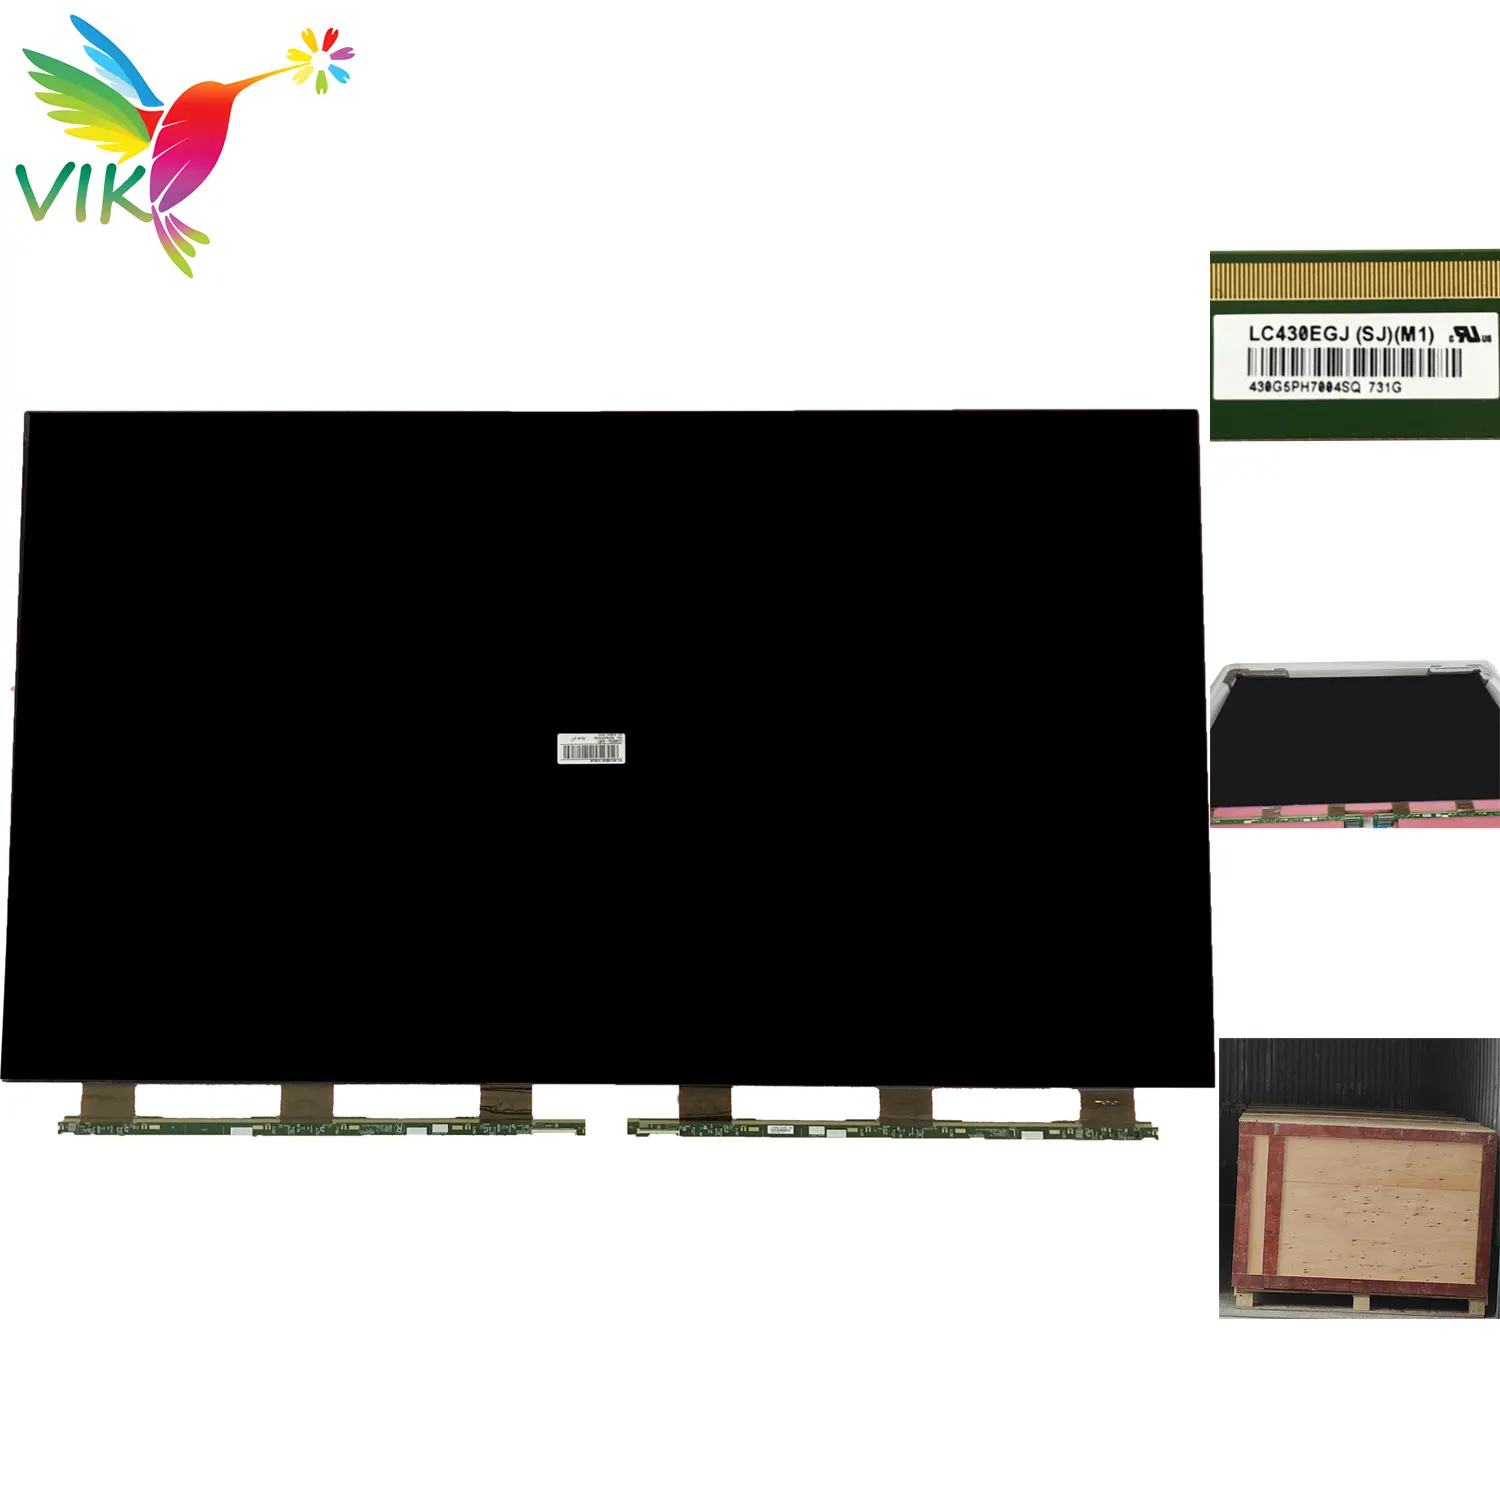 도매 공장 LC430EGJ-SJM1 산업 교체 화면 Led 스크린 패널 43 인치 LCD TV 부품 판매